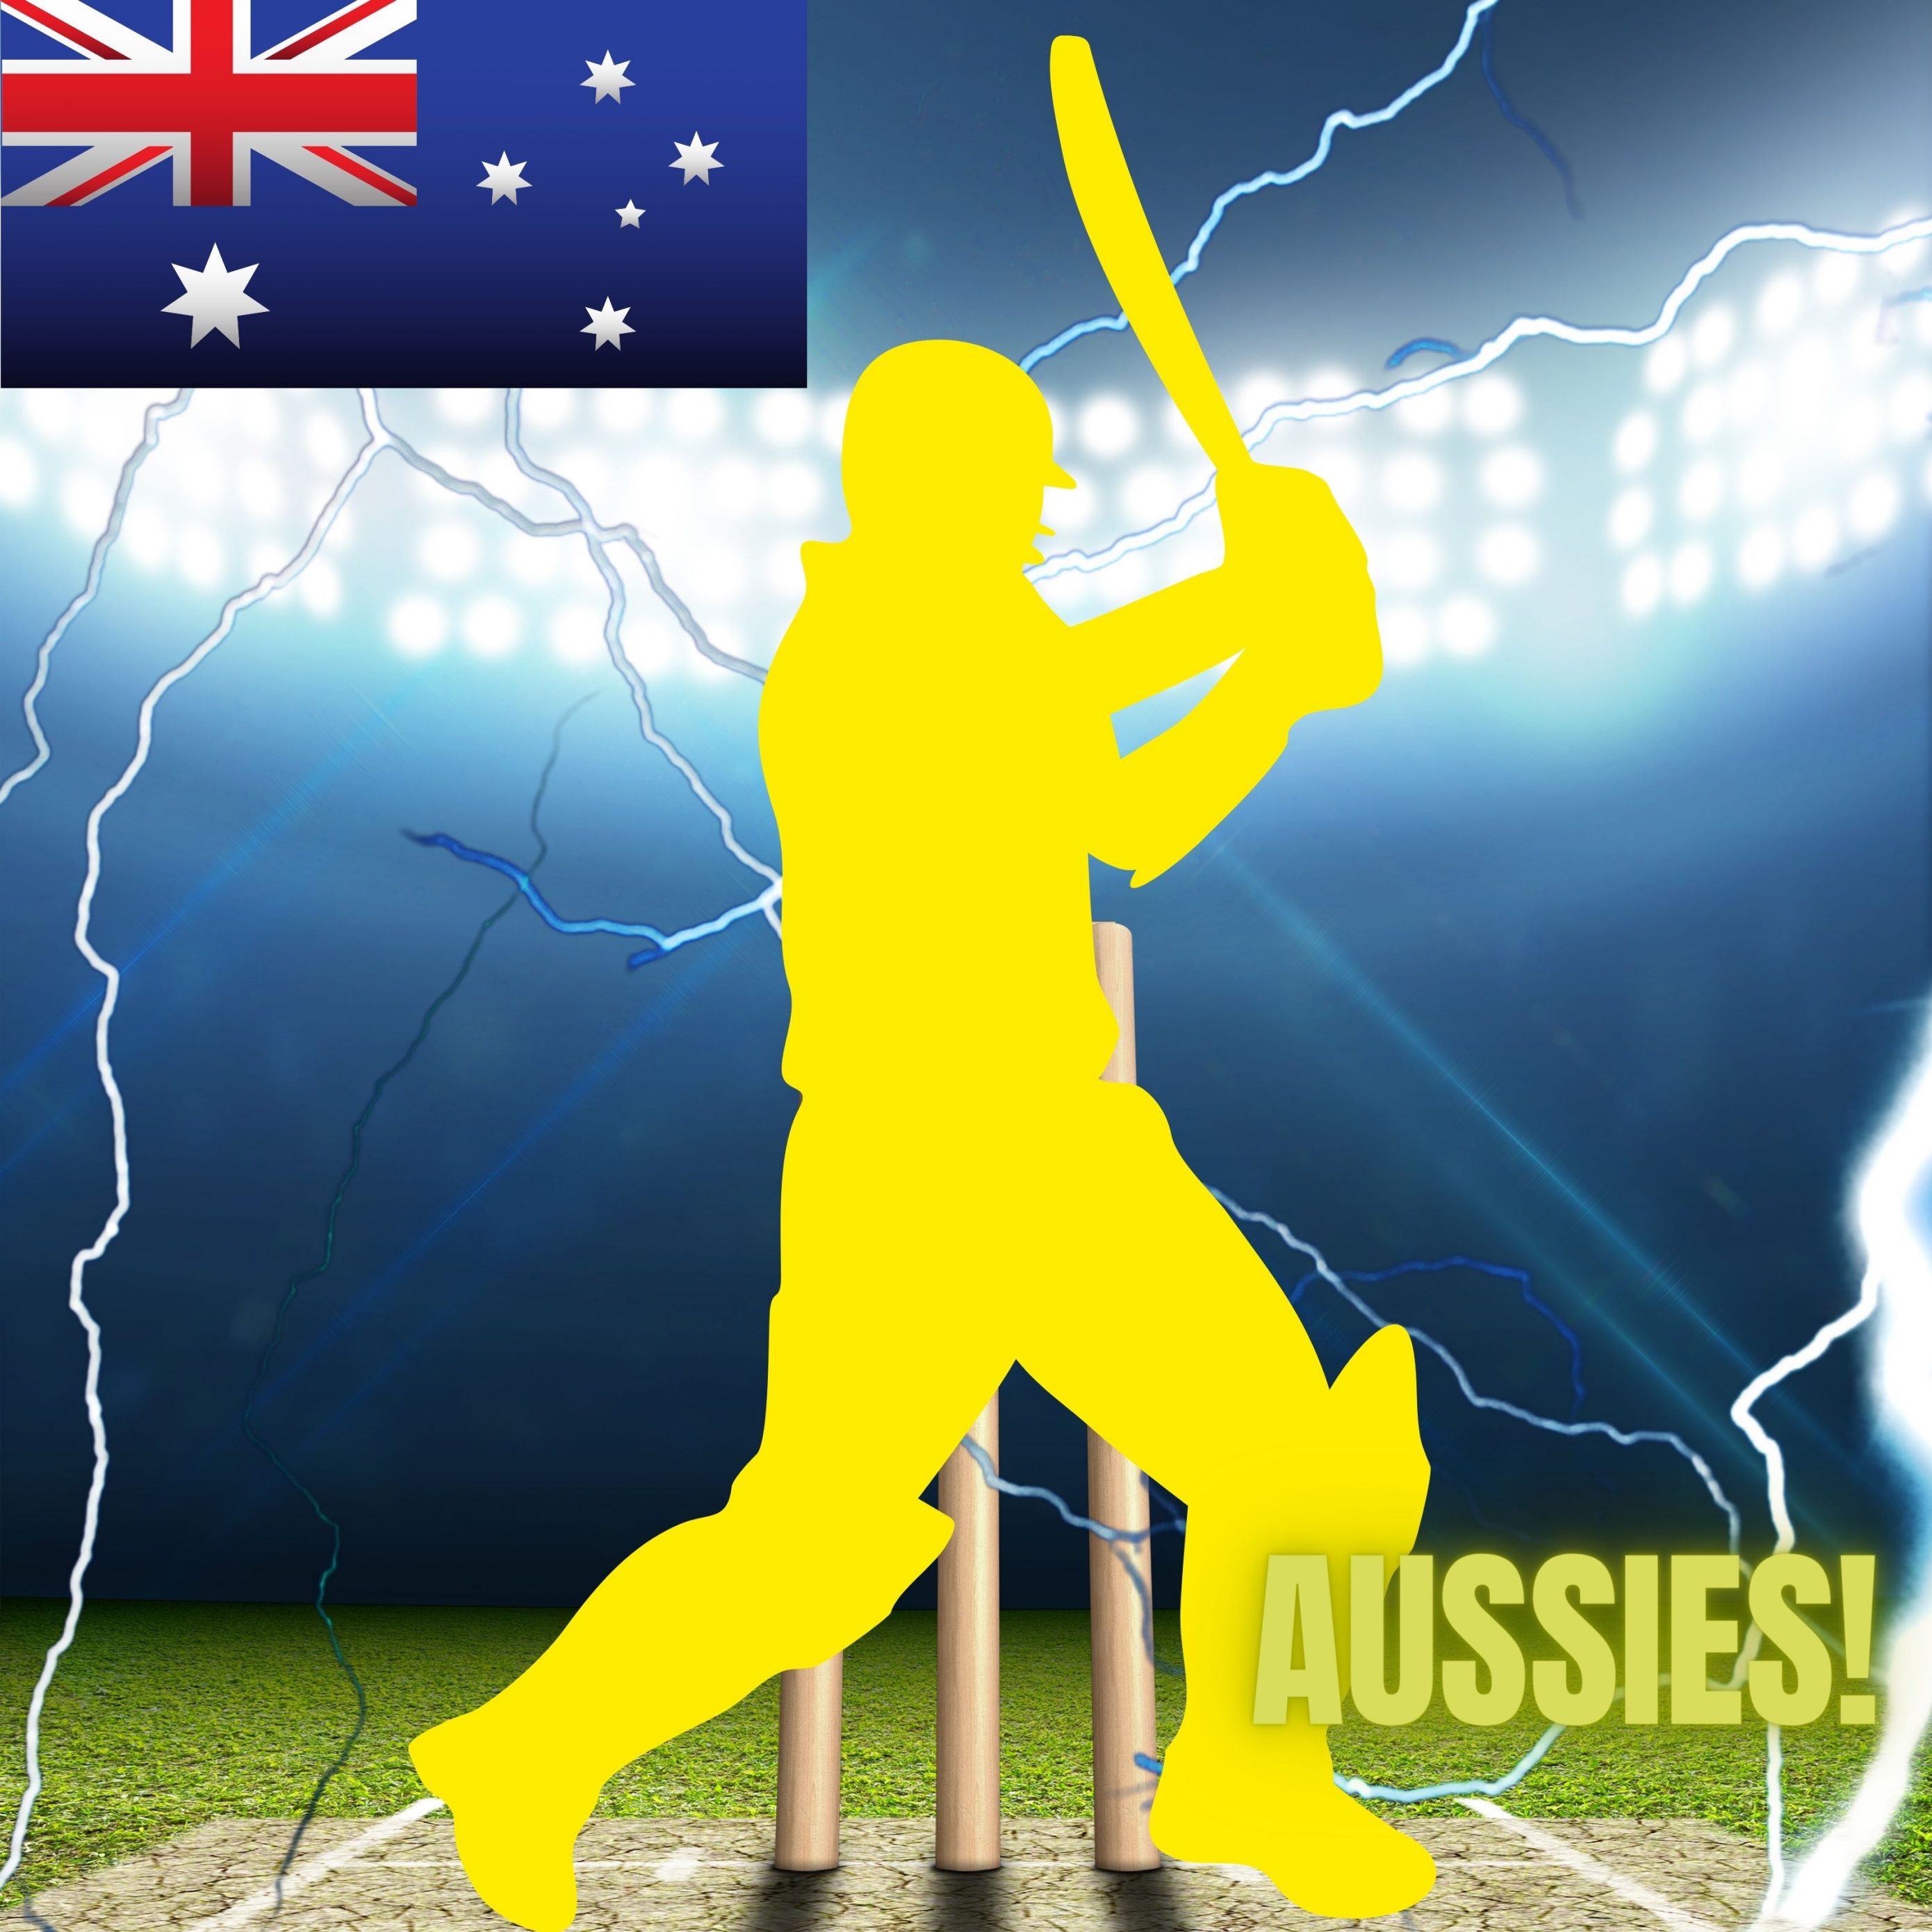 2780x2780 Parallax wallpaper 4k Australia Cricket Stadium iPad Wallpaper 2780x2780 pixels resolution